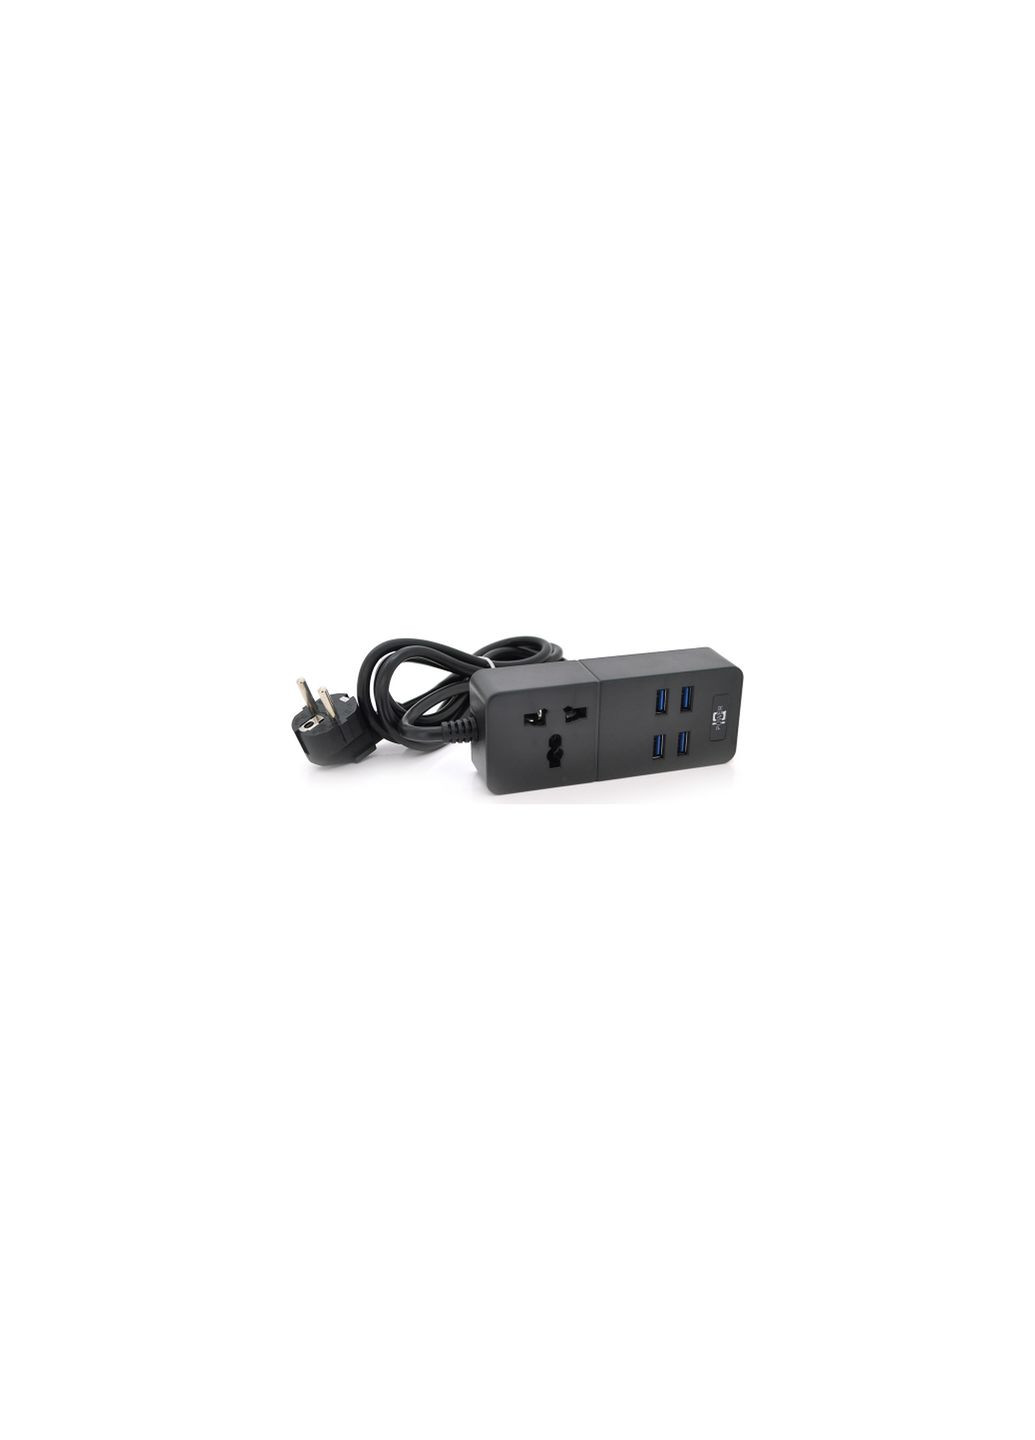 Мережевий фільтр живлення TВТ05, 1роз, 4*USB Black (ТВ-Т06-Black) Voltronic tв-т05, 1роз, 4*usb black (268146394)